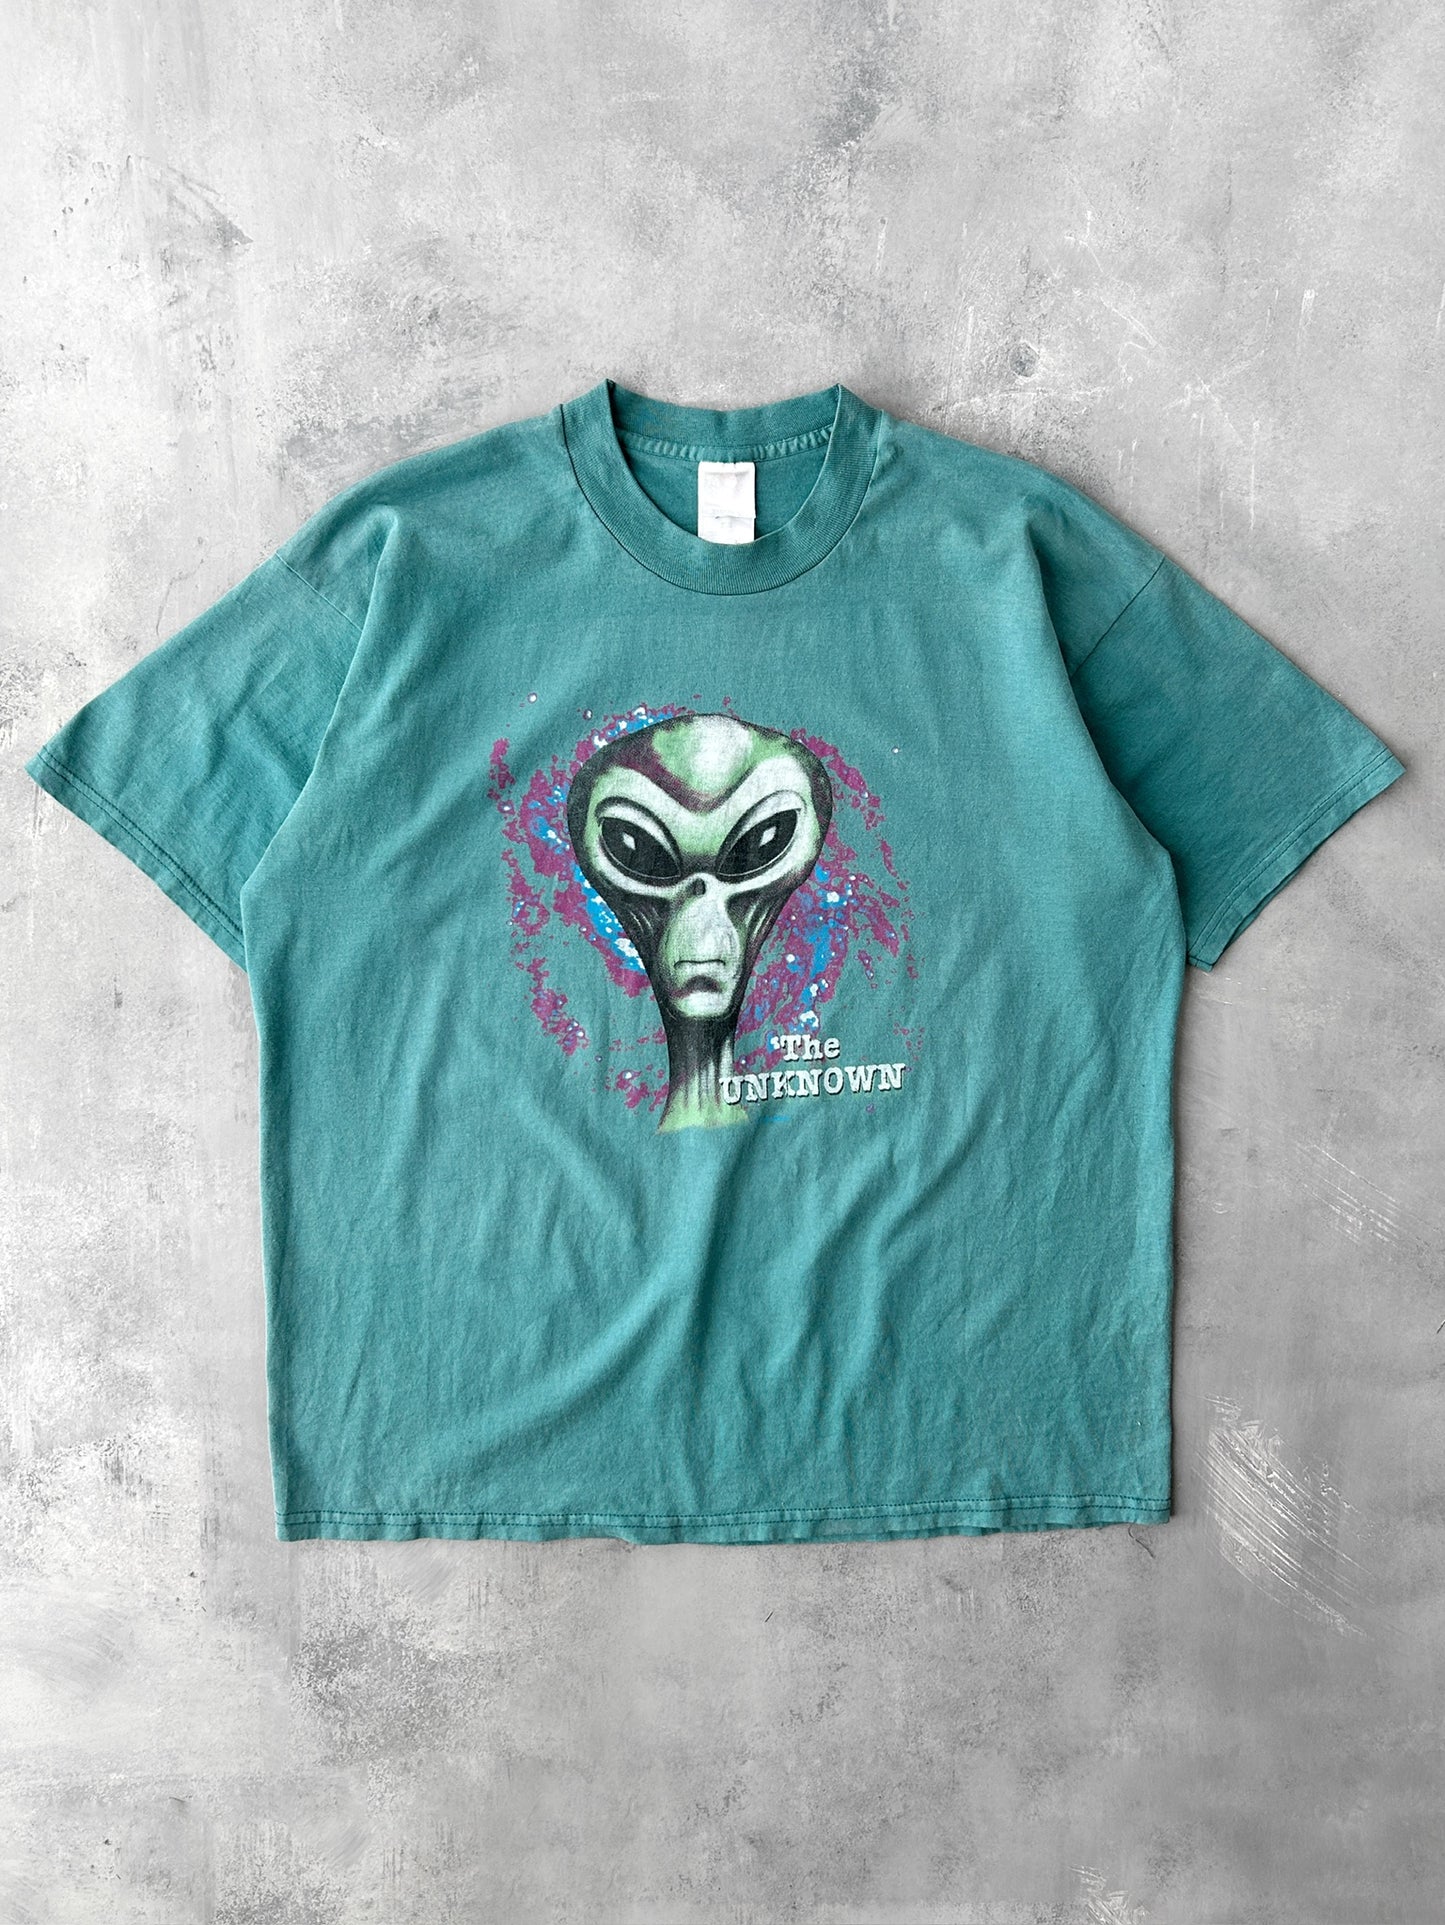 Extra Terrestrial T-Shirt Y2K - XL